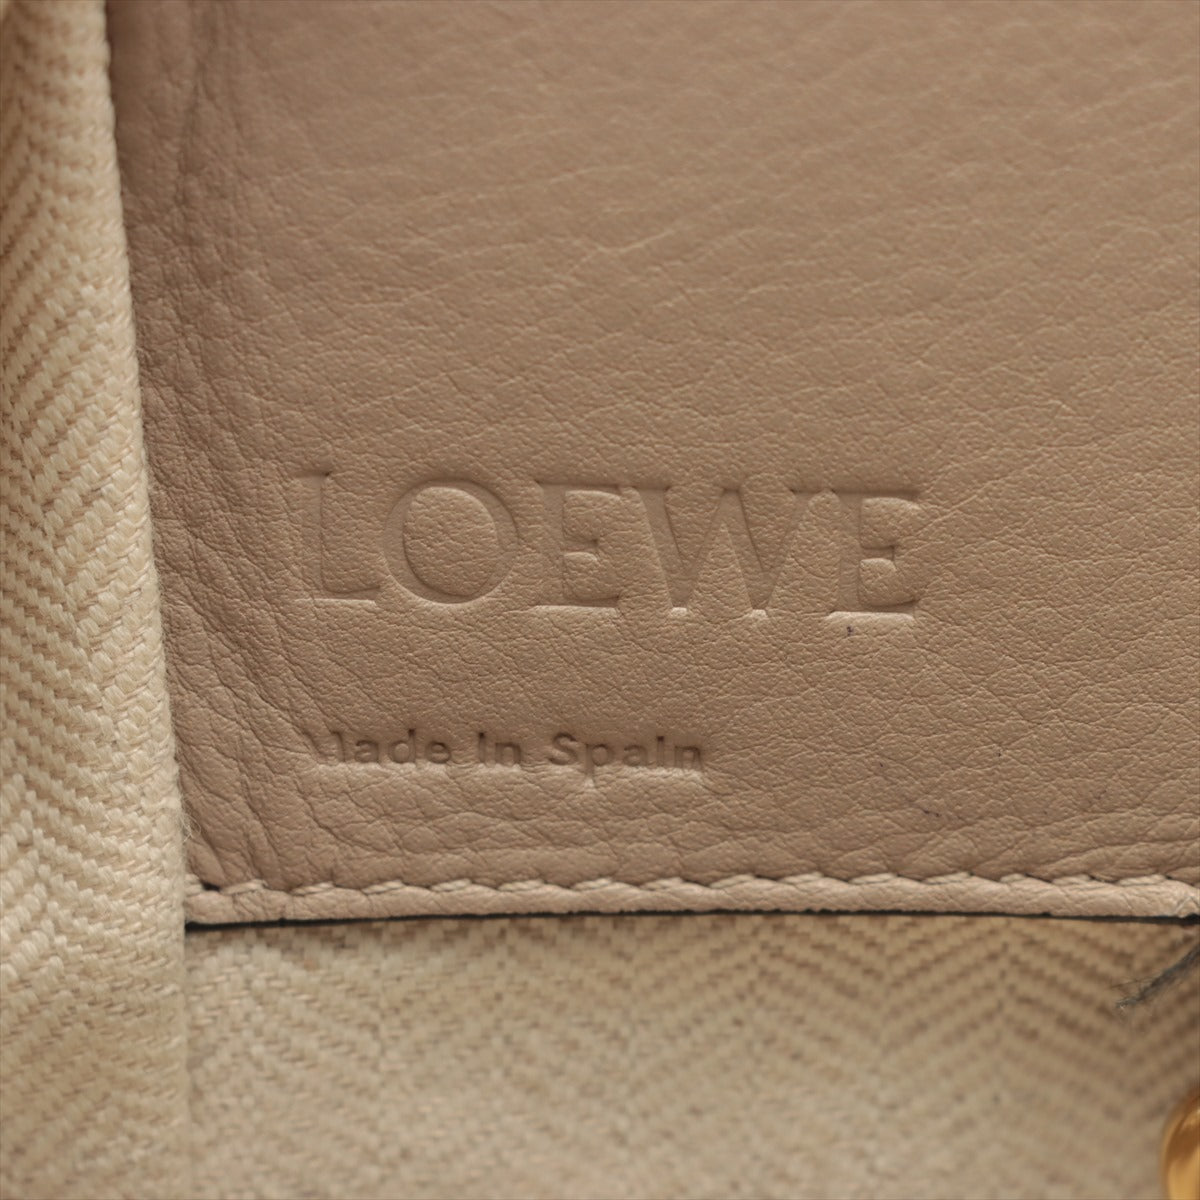 Loewe Hammock small Leather 2way shoulder bag Greige